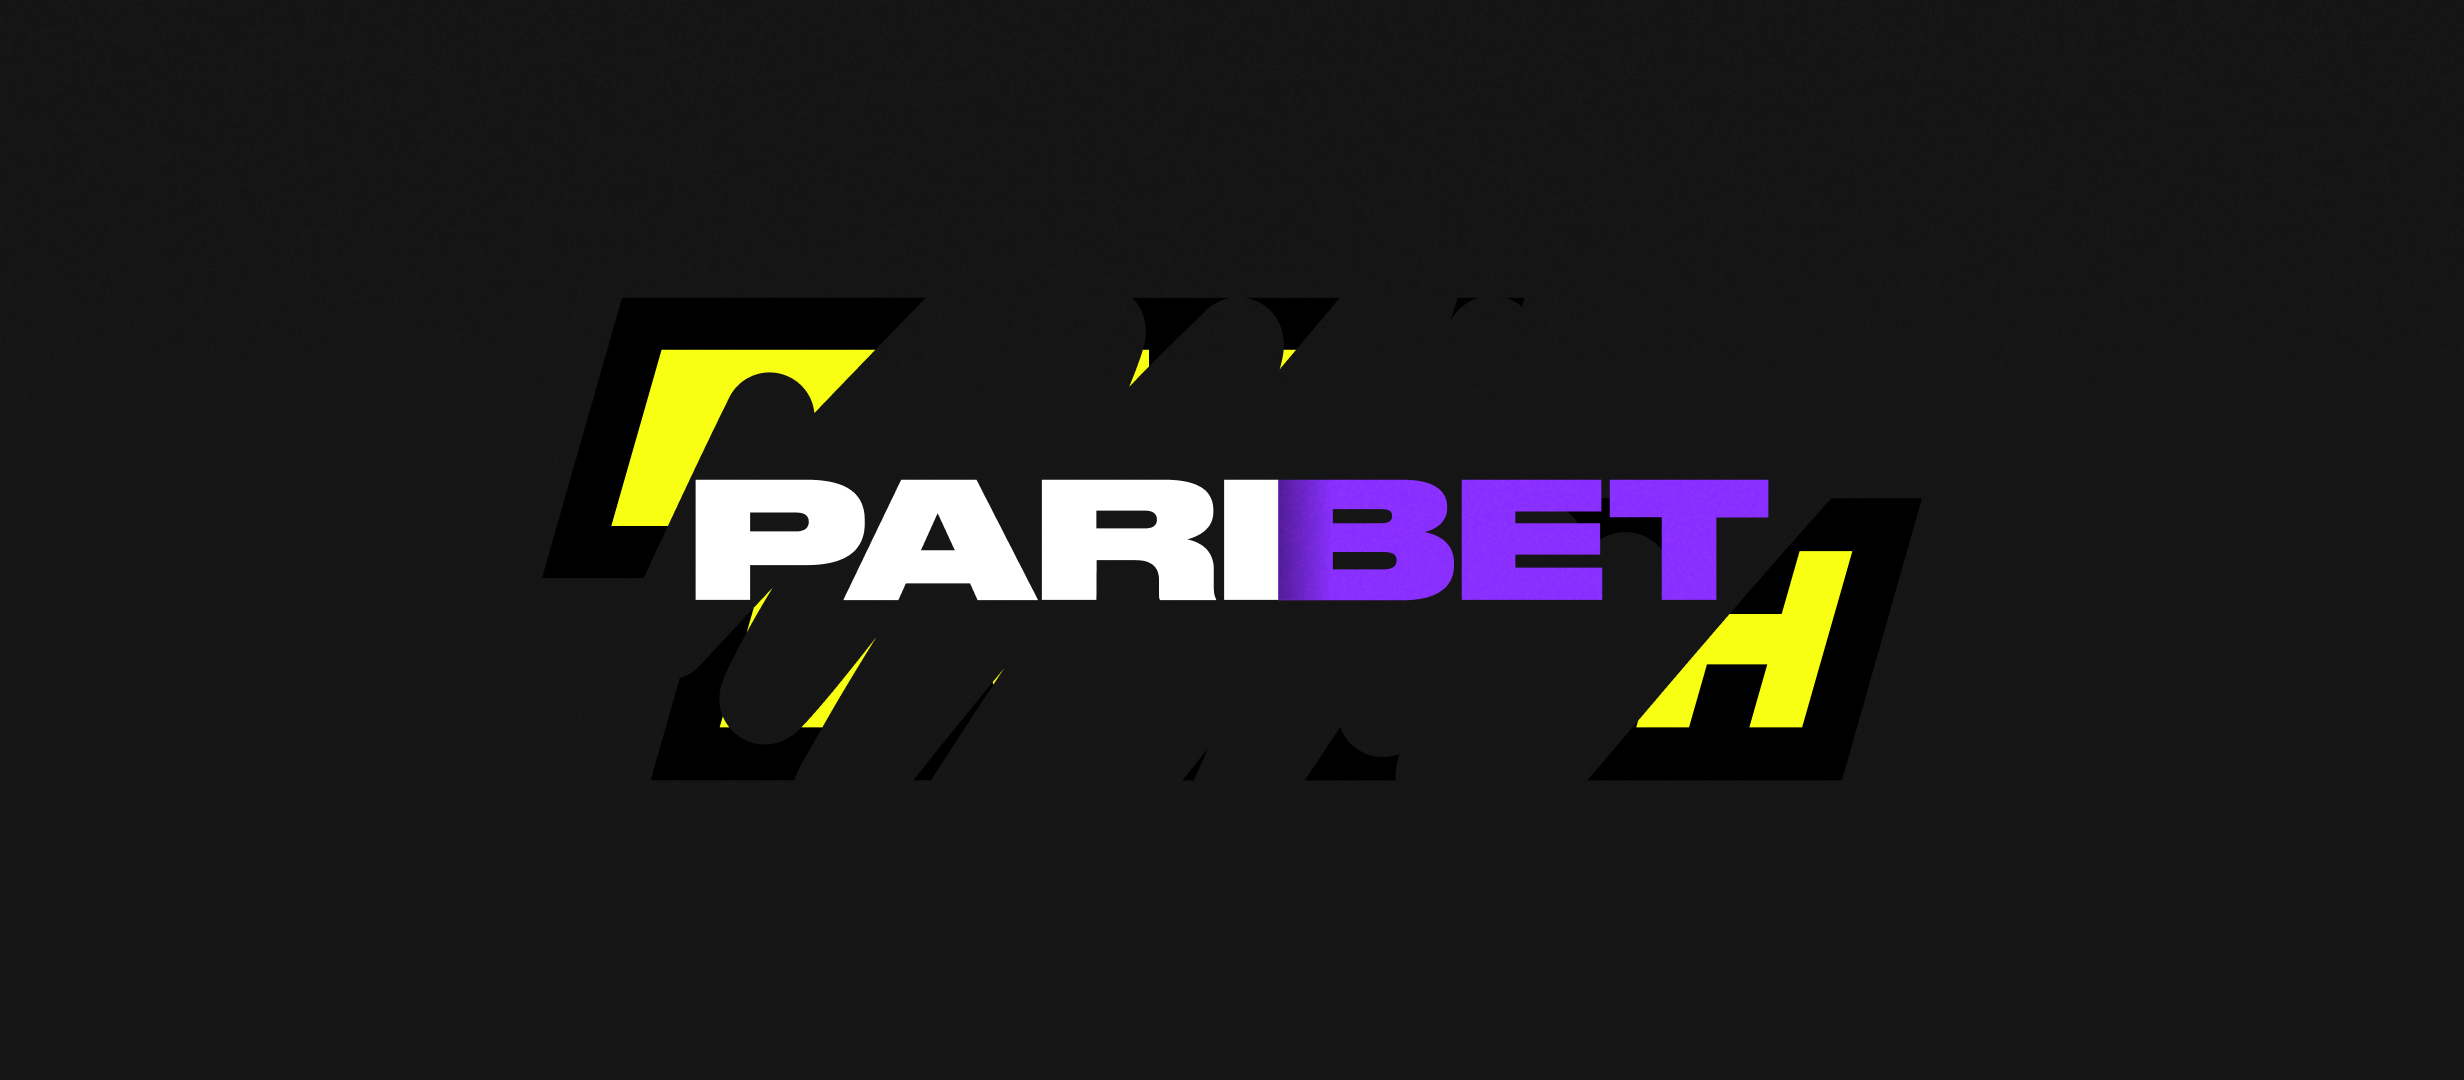 Ребрендинг «Париматч»: букмекер  меняет название на Paribet